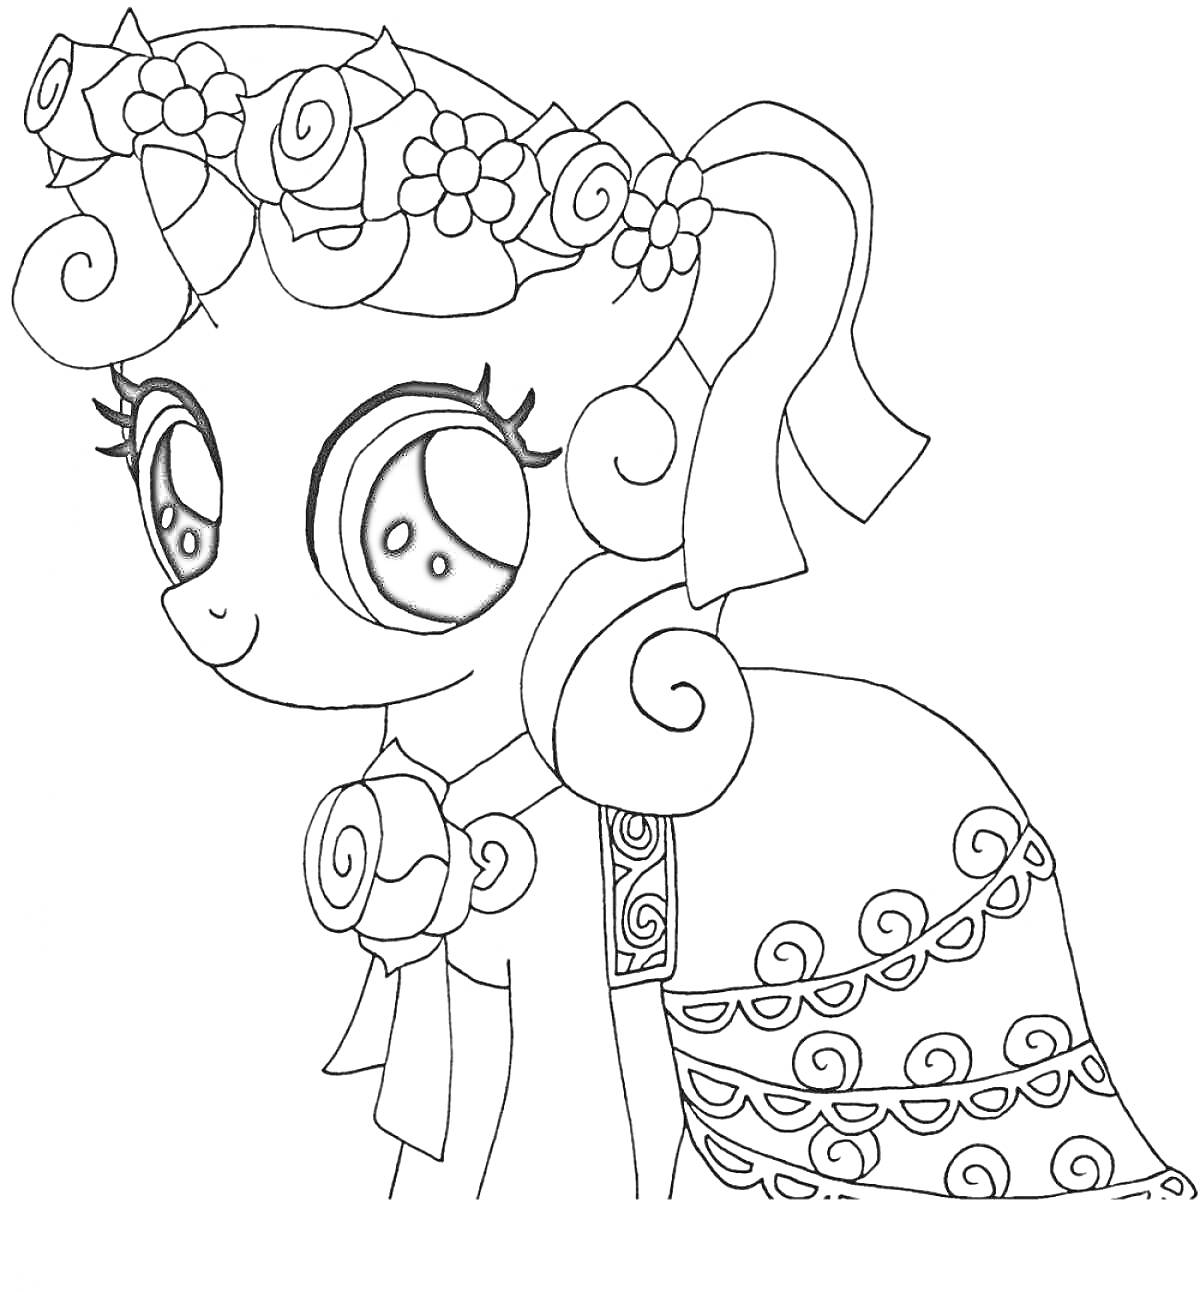 Раскраска Пони с большими глазами в цветочной тиаре и с бантом на шее в украшенной одежде